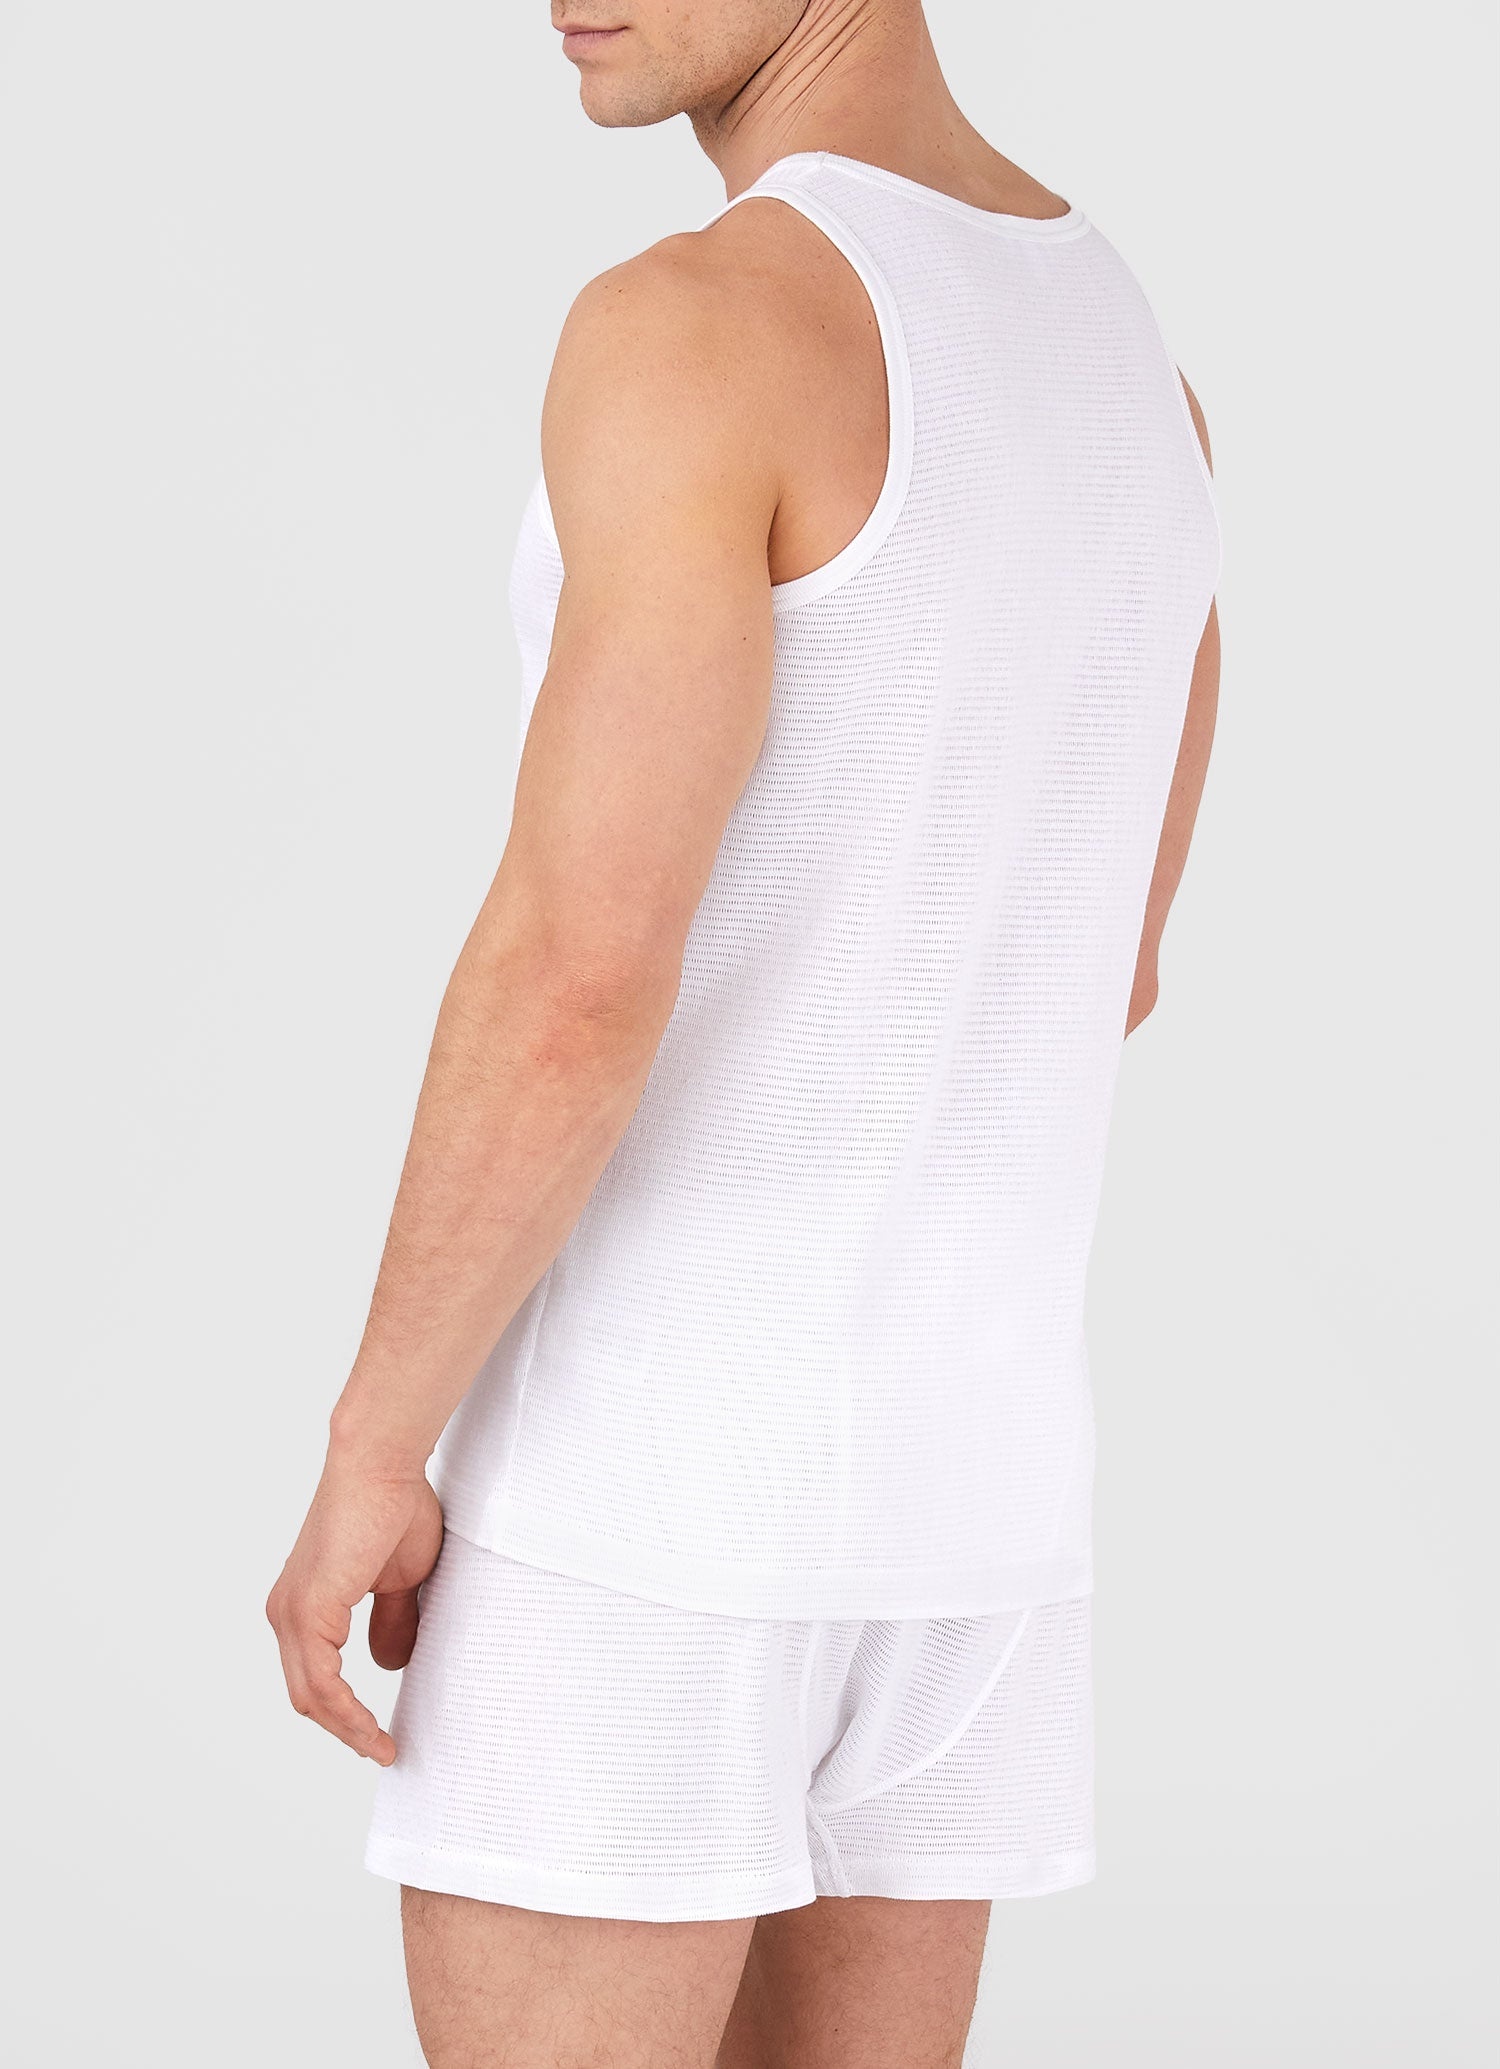 Cellular Cotton Underwear Vest - 3